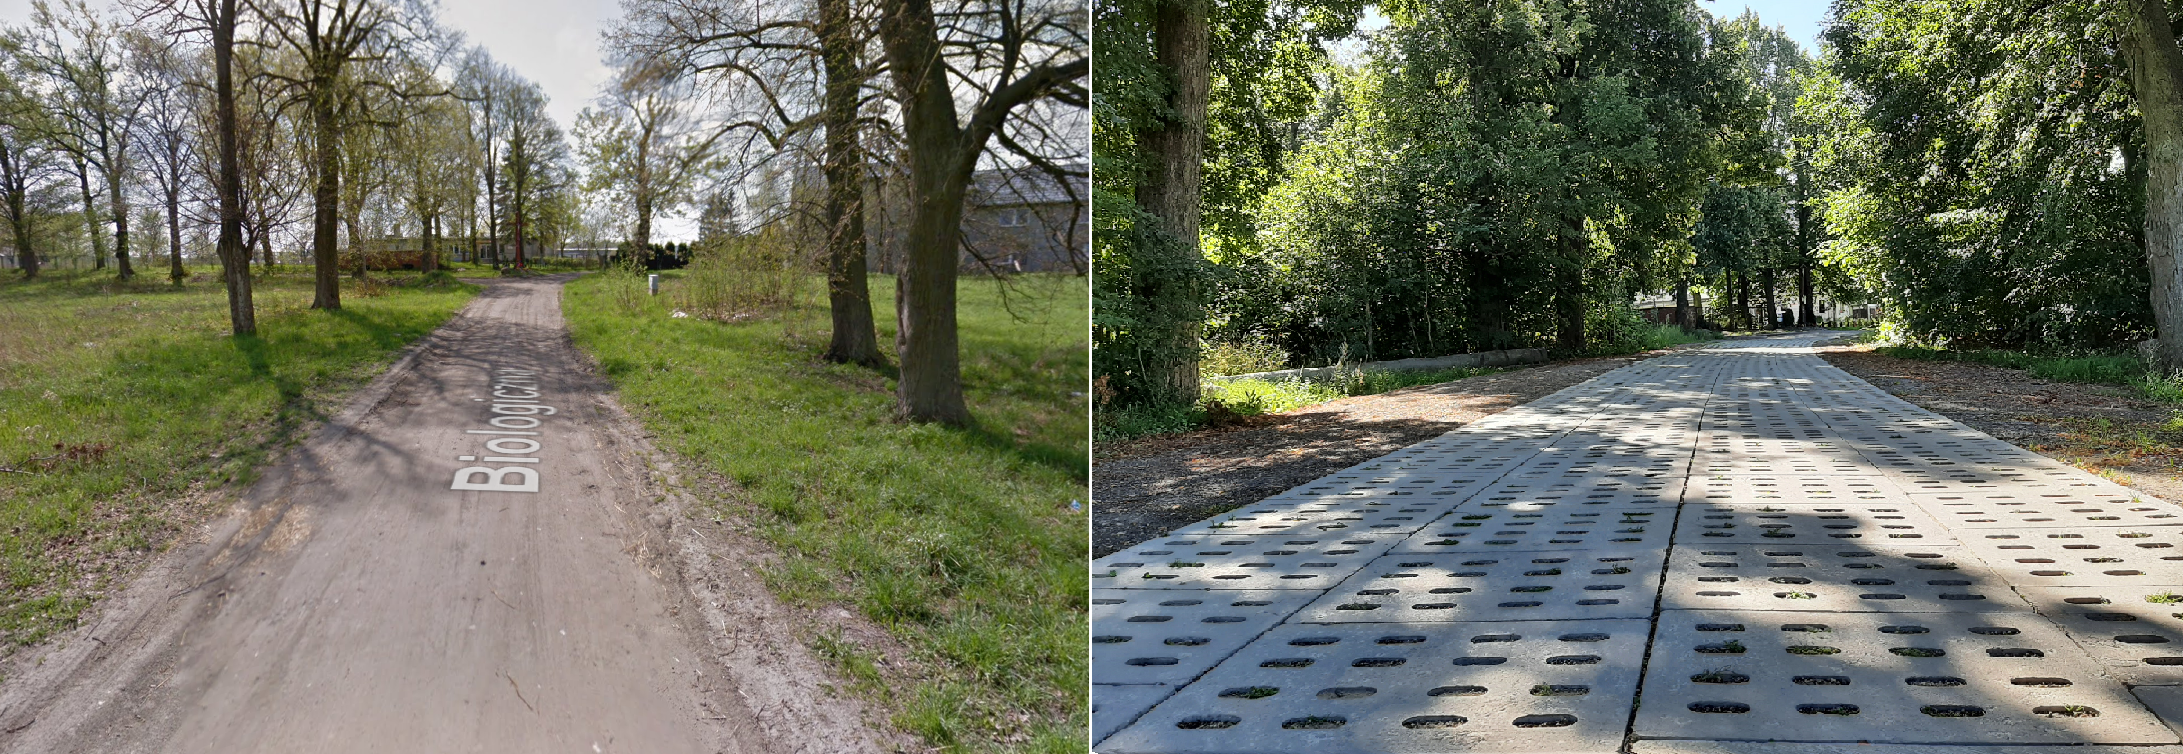 Zdjęcie przedstawia widok ulicy Biologicznej przed i po wykonaniu inwestycji